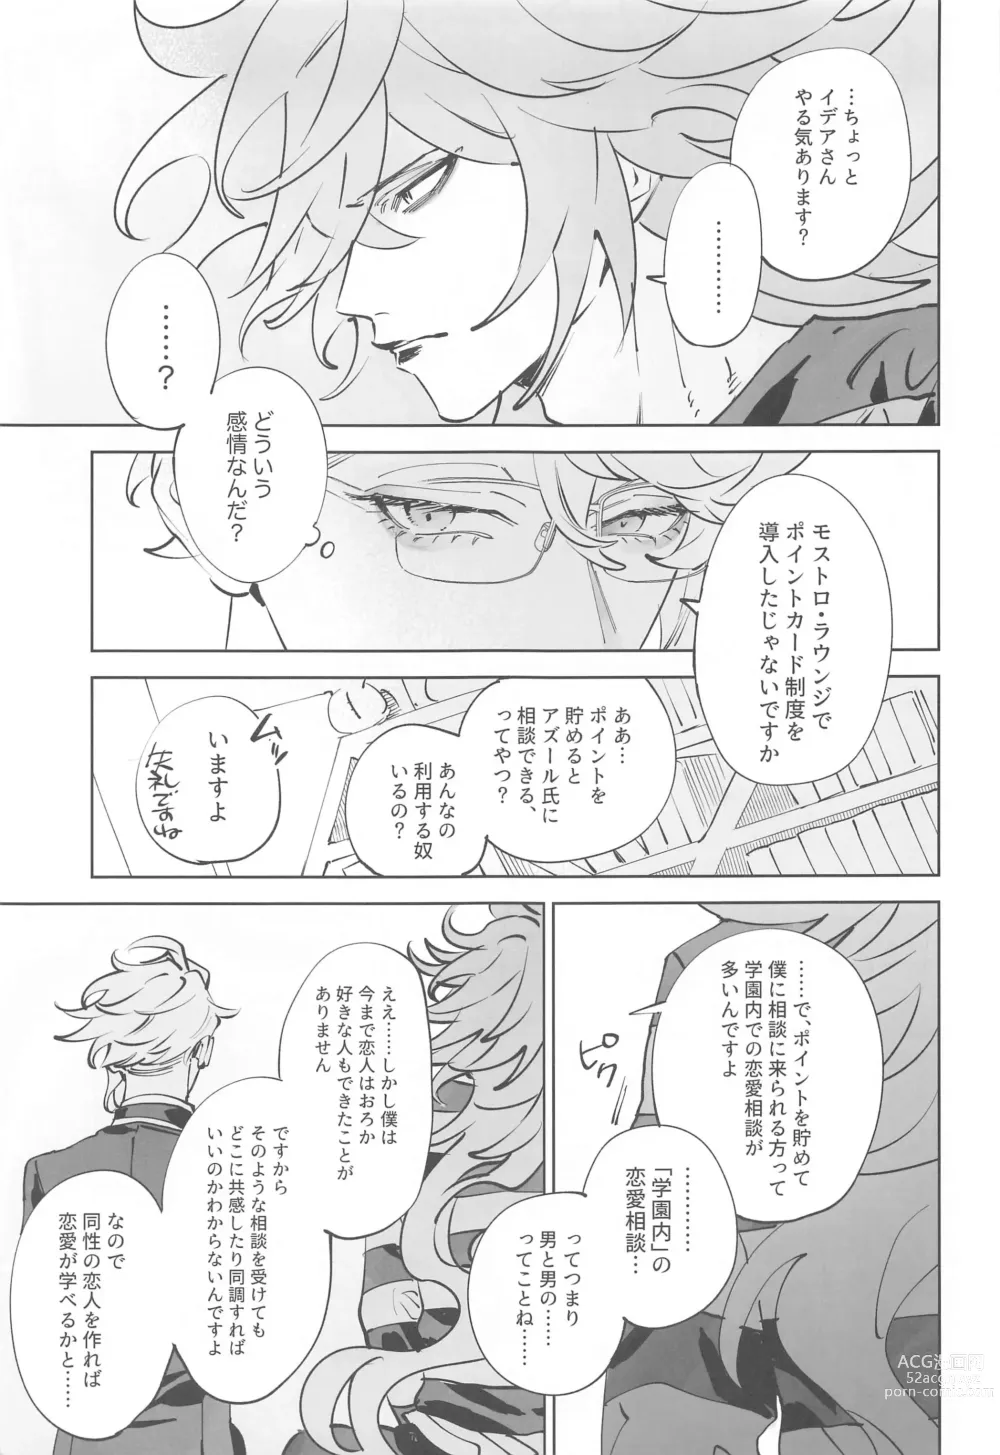 Page 4 of doujinshi Azul-kun wa Riku no Osu o Namesugite Iru.